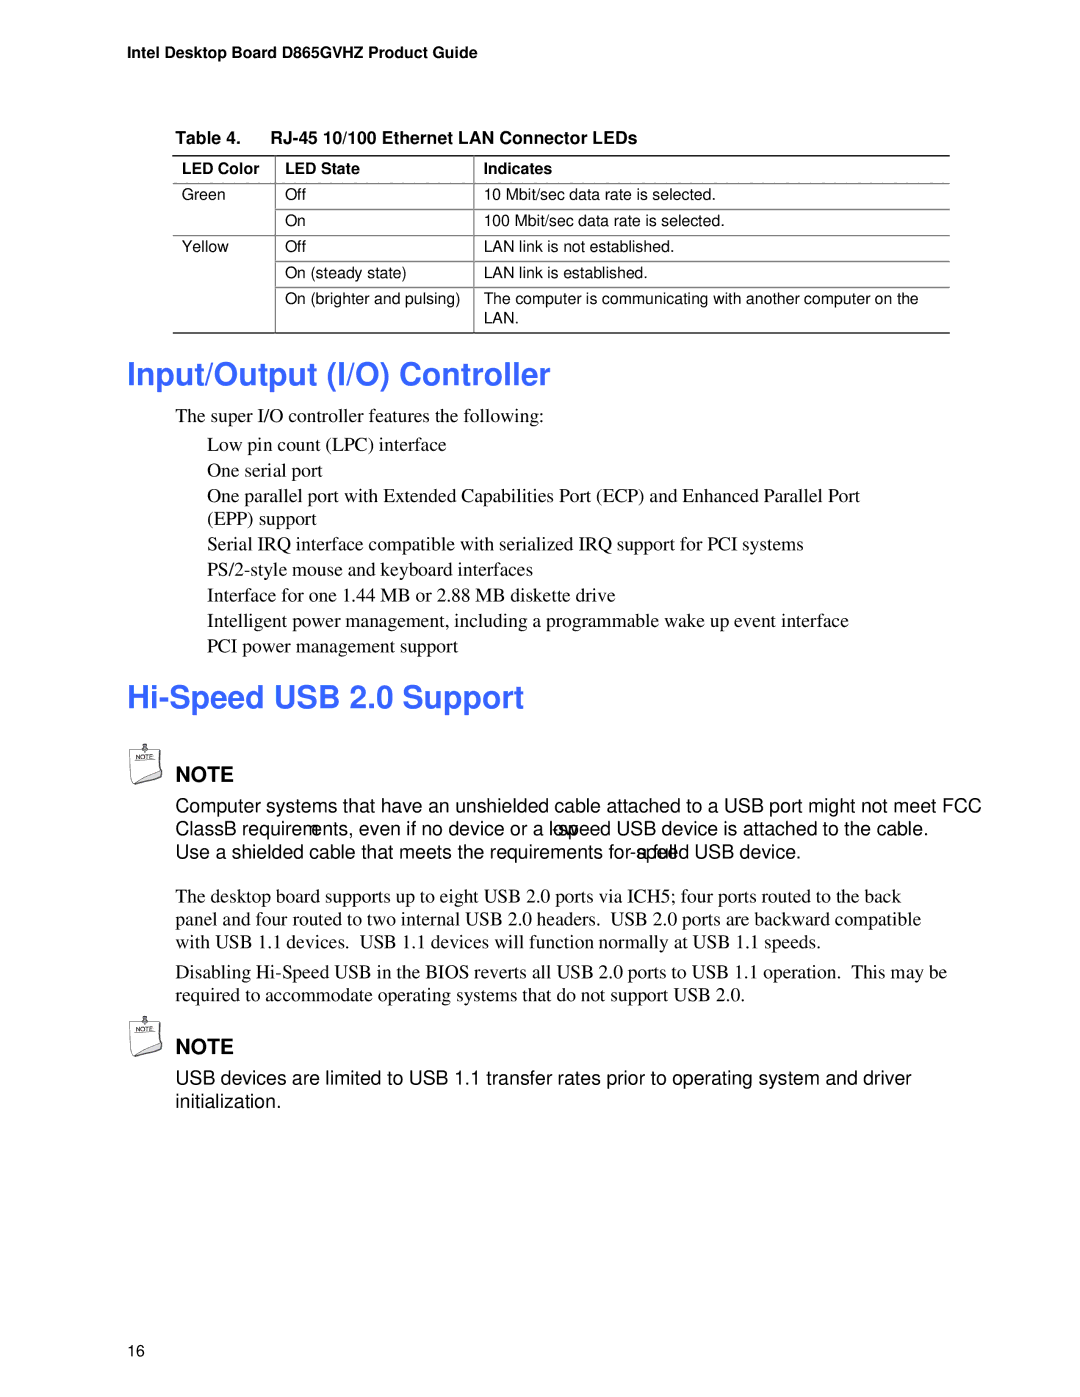 Intel D865GVHZ manual Input/Output I/O Controller, Hi-Speed USB 2.0 Support, RJ-45 10/100 Ethernet LAN Connector LEDs 